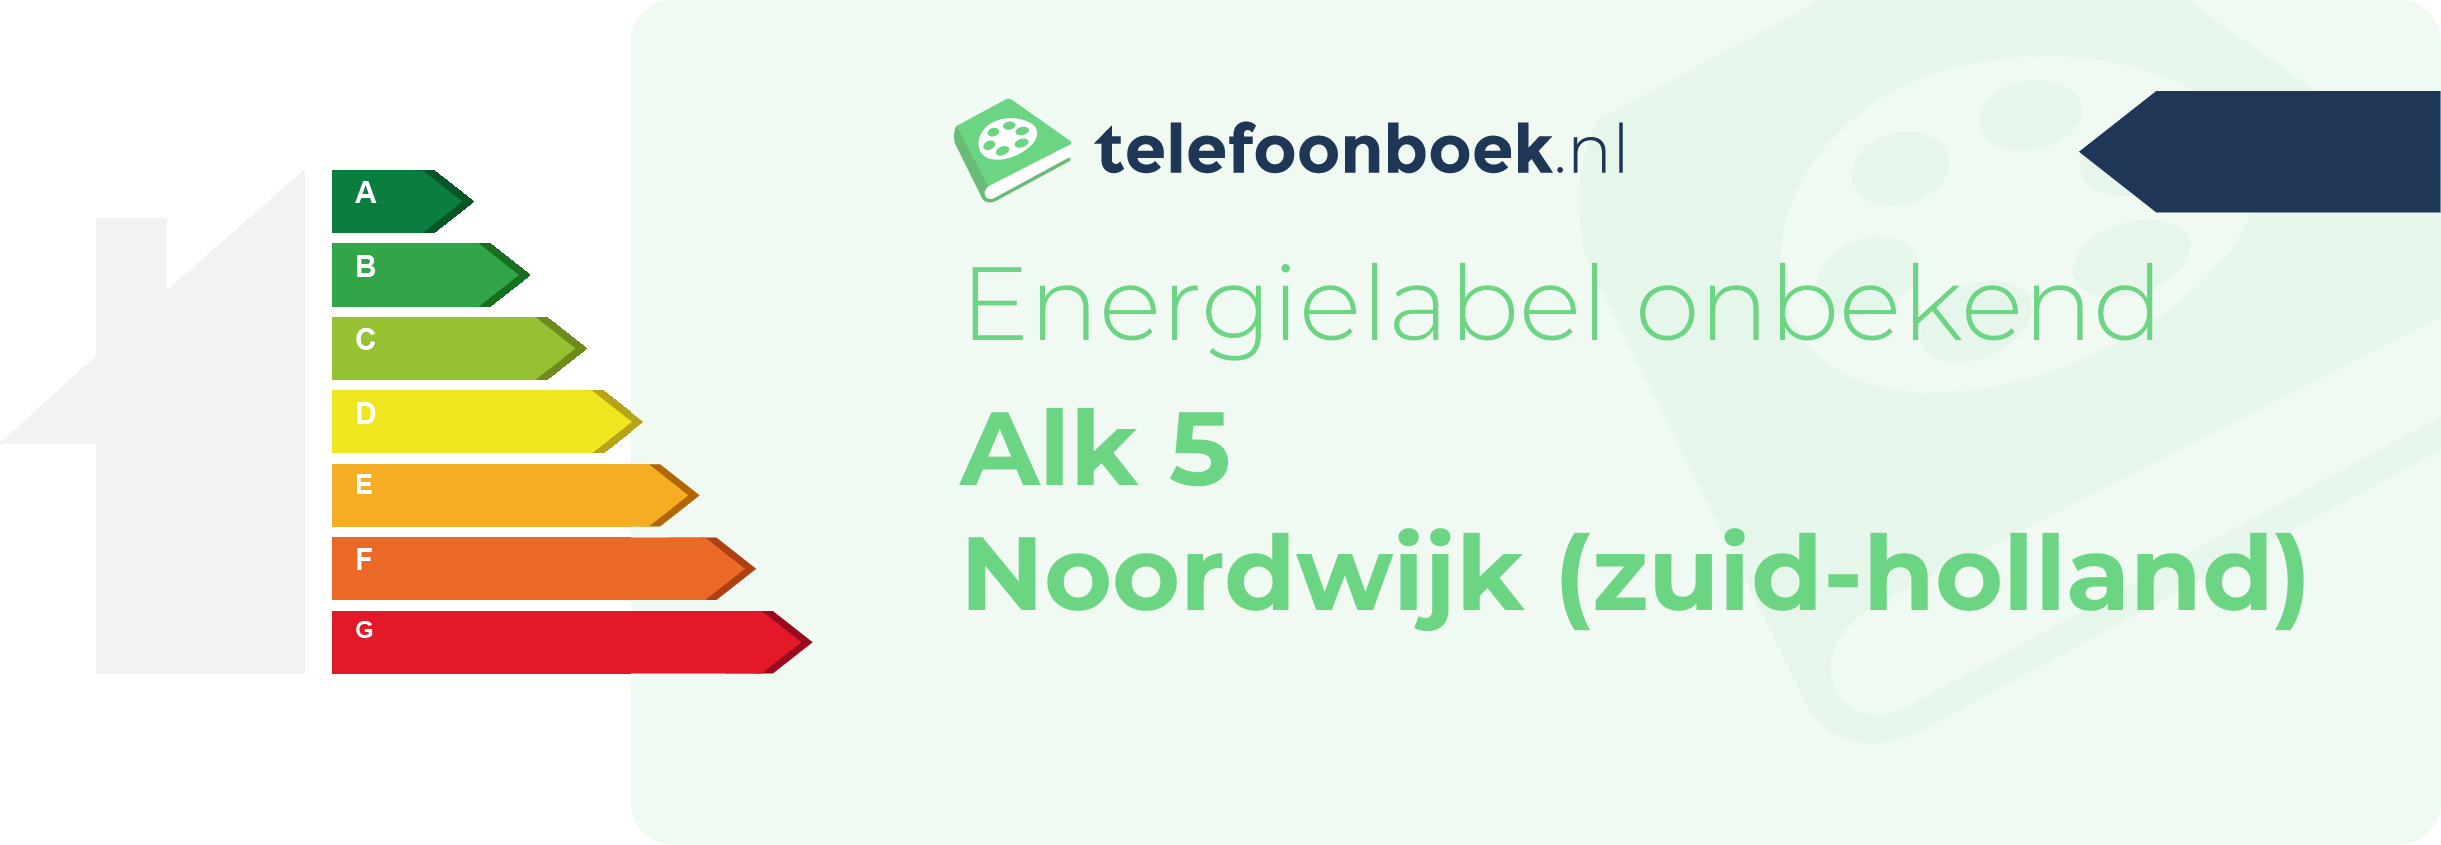 Energielabel Alk 5 Noordwijk (Zuid-Holland)